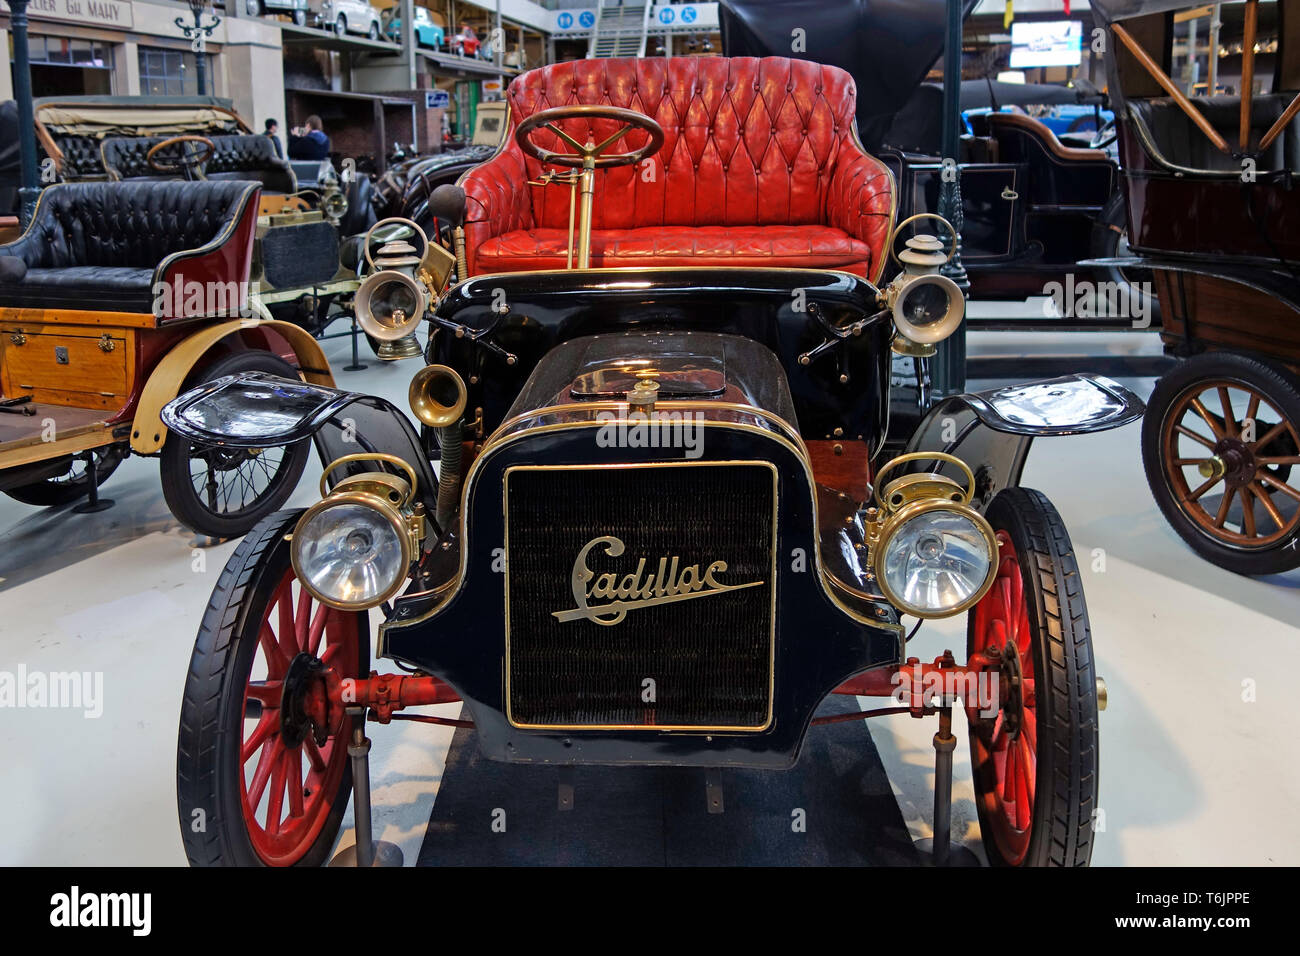 1907 Cadillac Modell K, Amerikanische 1-Zylinder klassisches Automobil/Oldtimer/antike Fahrzeug in der Autoworld Oldtimer Museum in Brüssel, Belgien Stockfoto